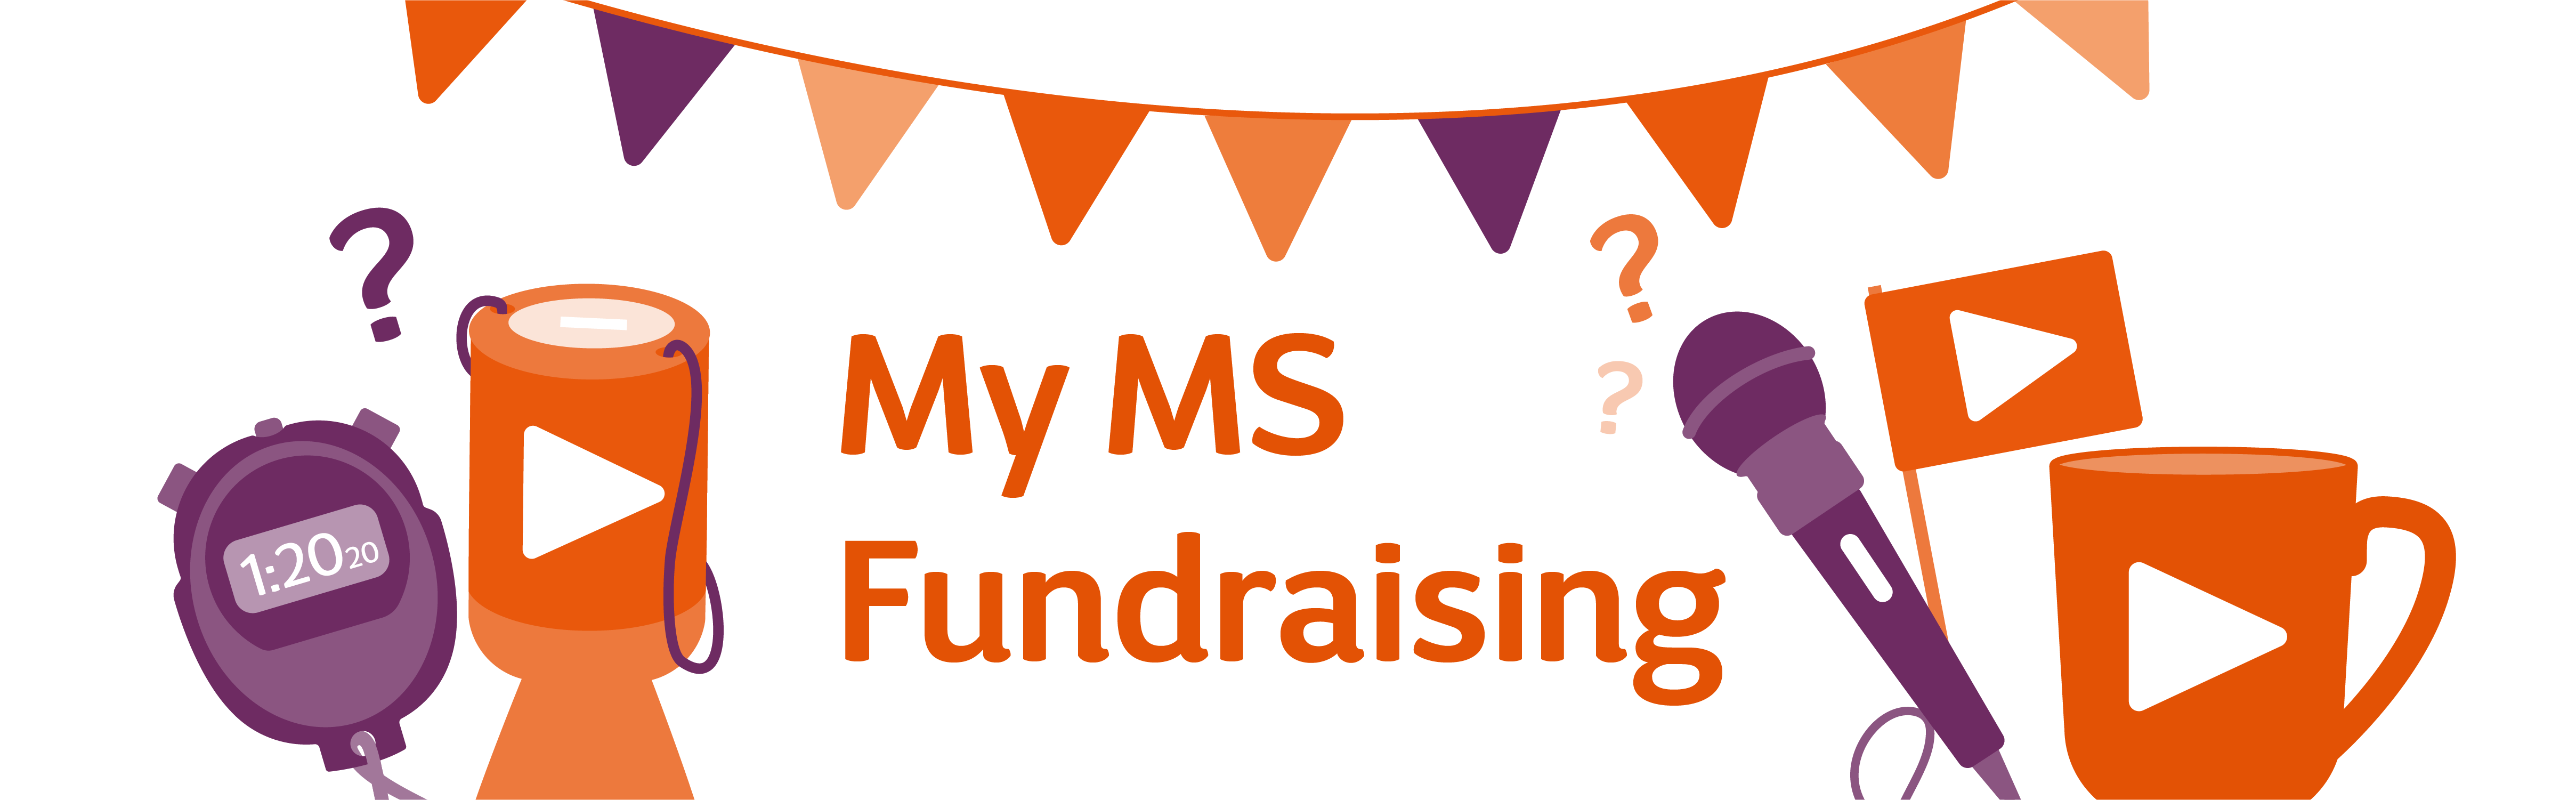 My MS Fundraising MS Society